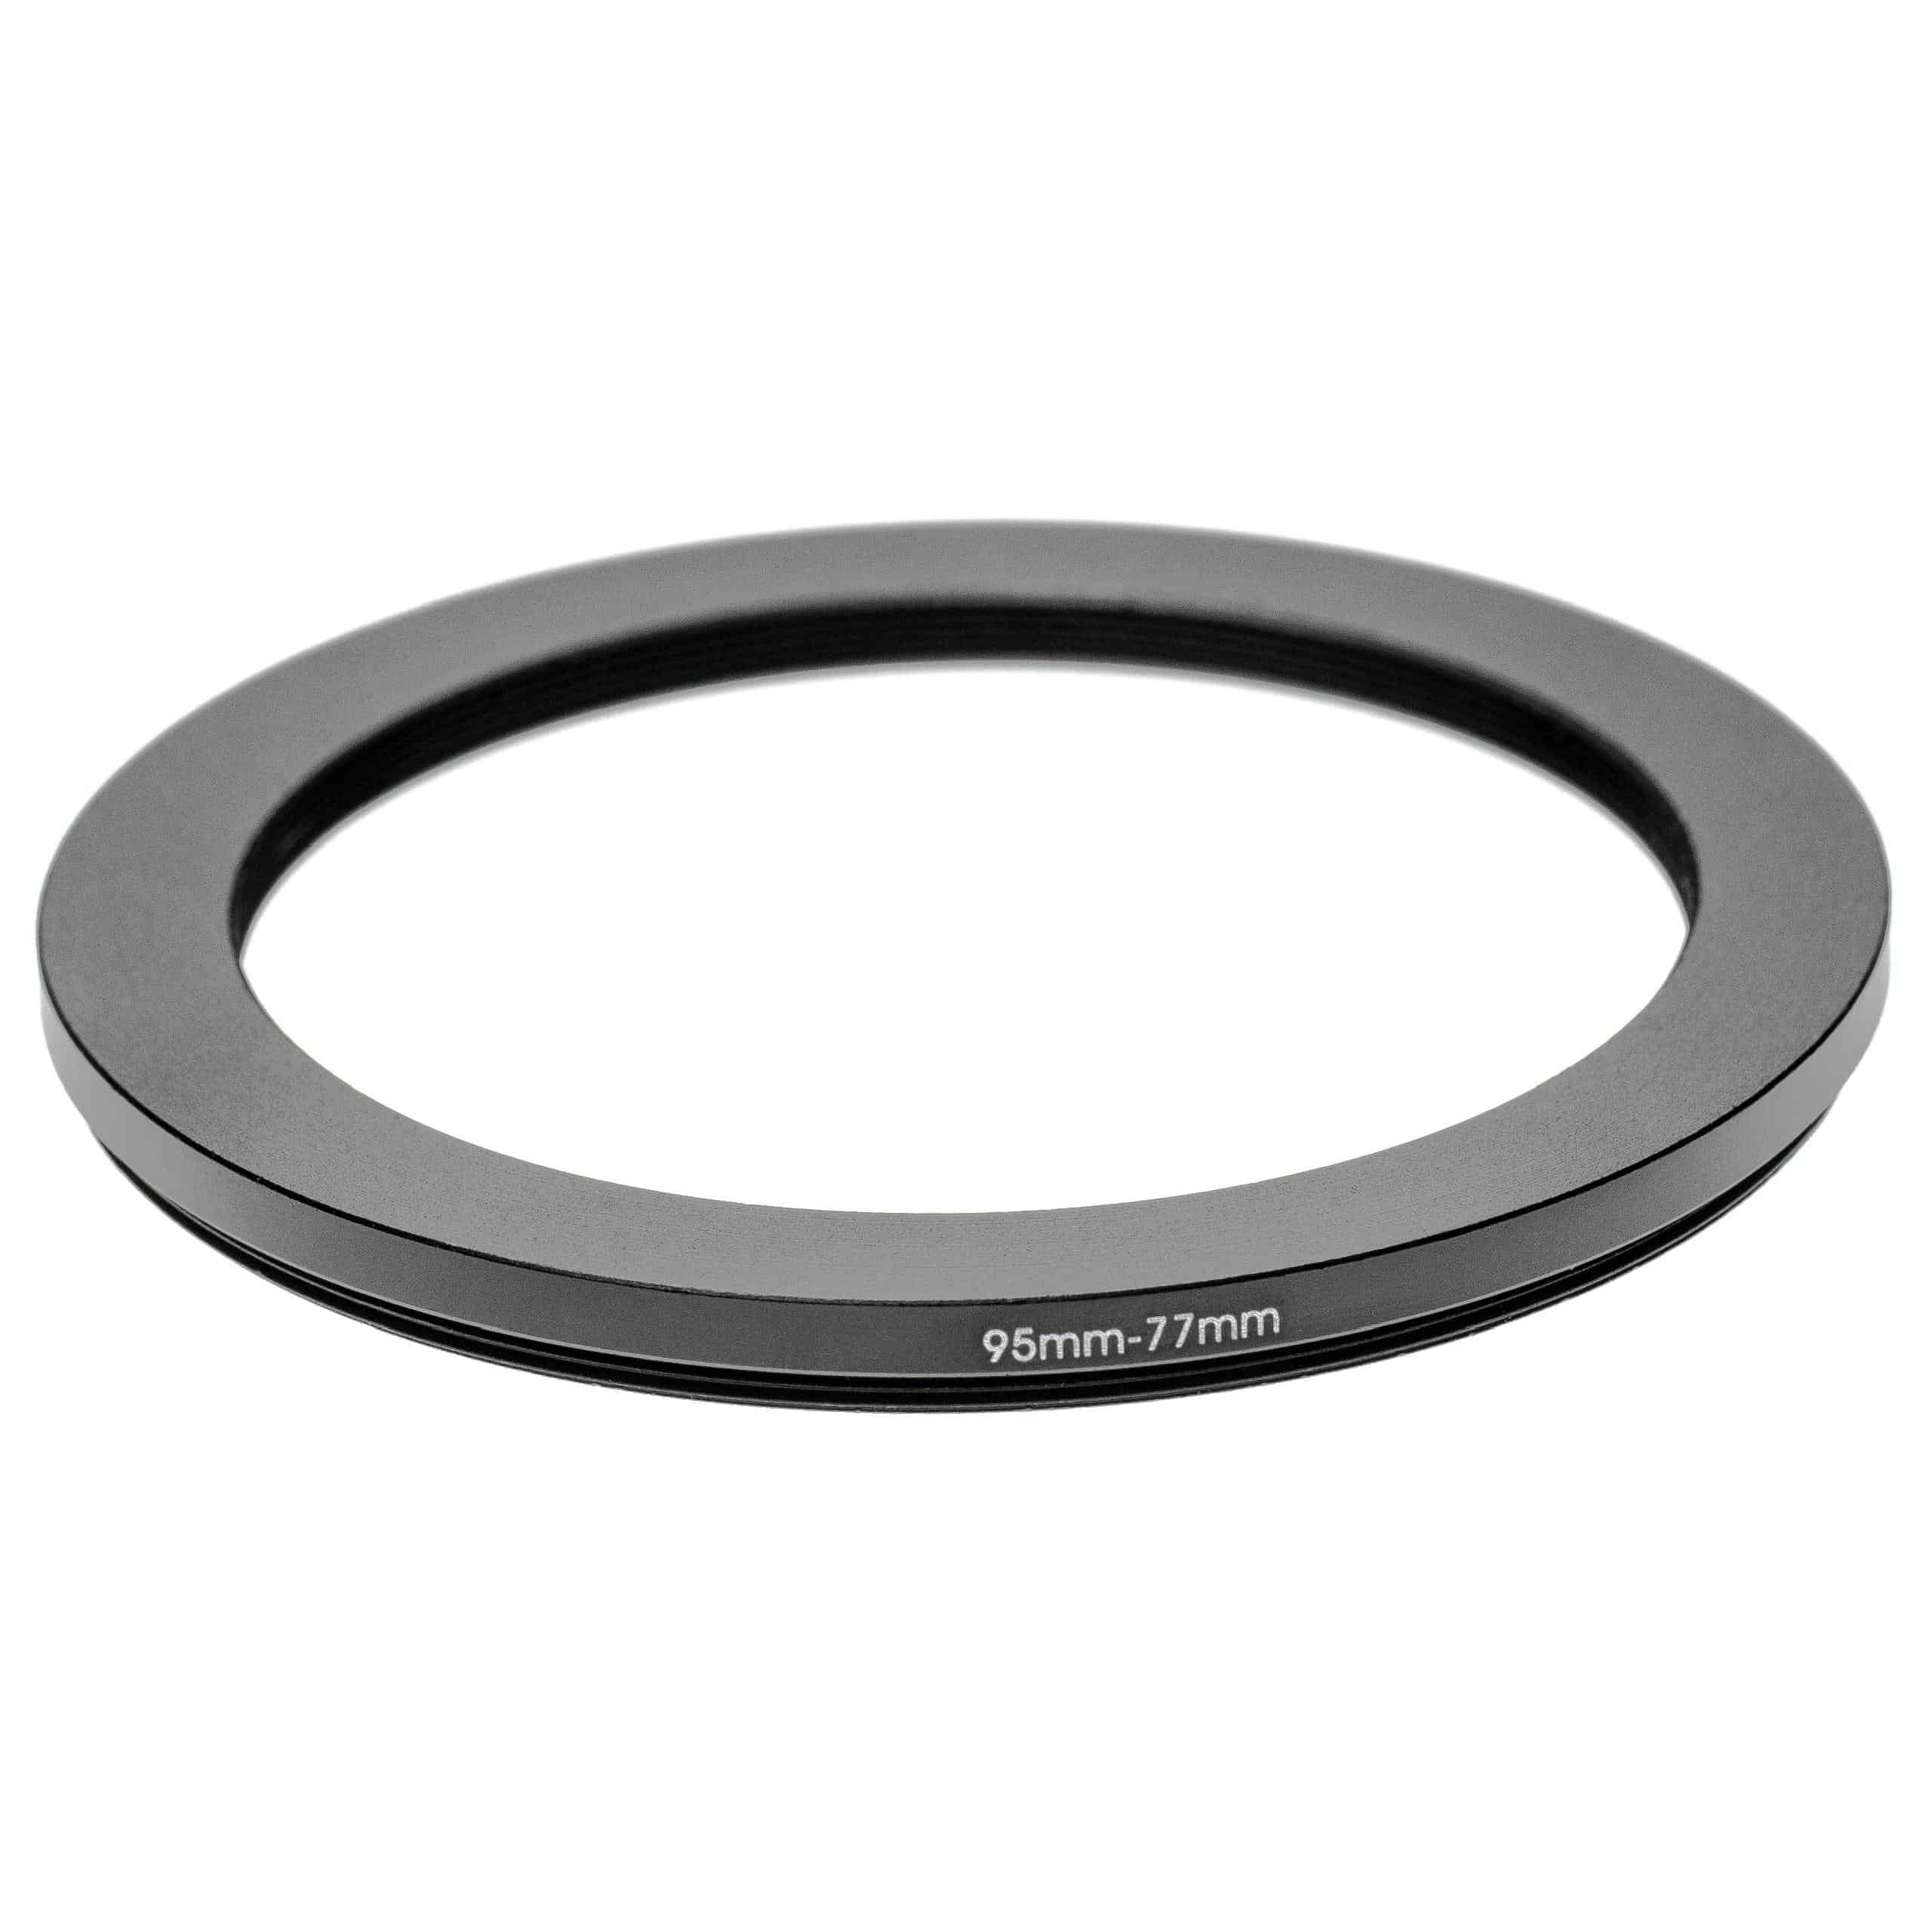 Anello adattatore step-down da 95 mm a 77 mm per obiettivo fotocamera - Adattatore filtro, alluminio (anodiz